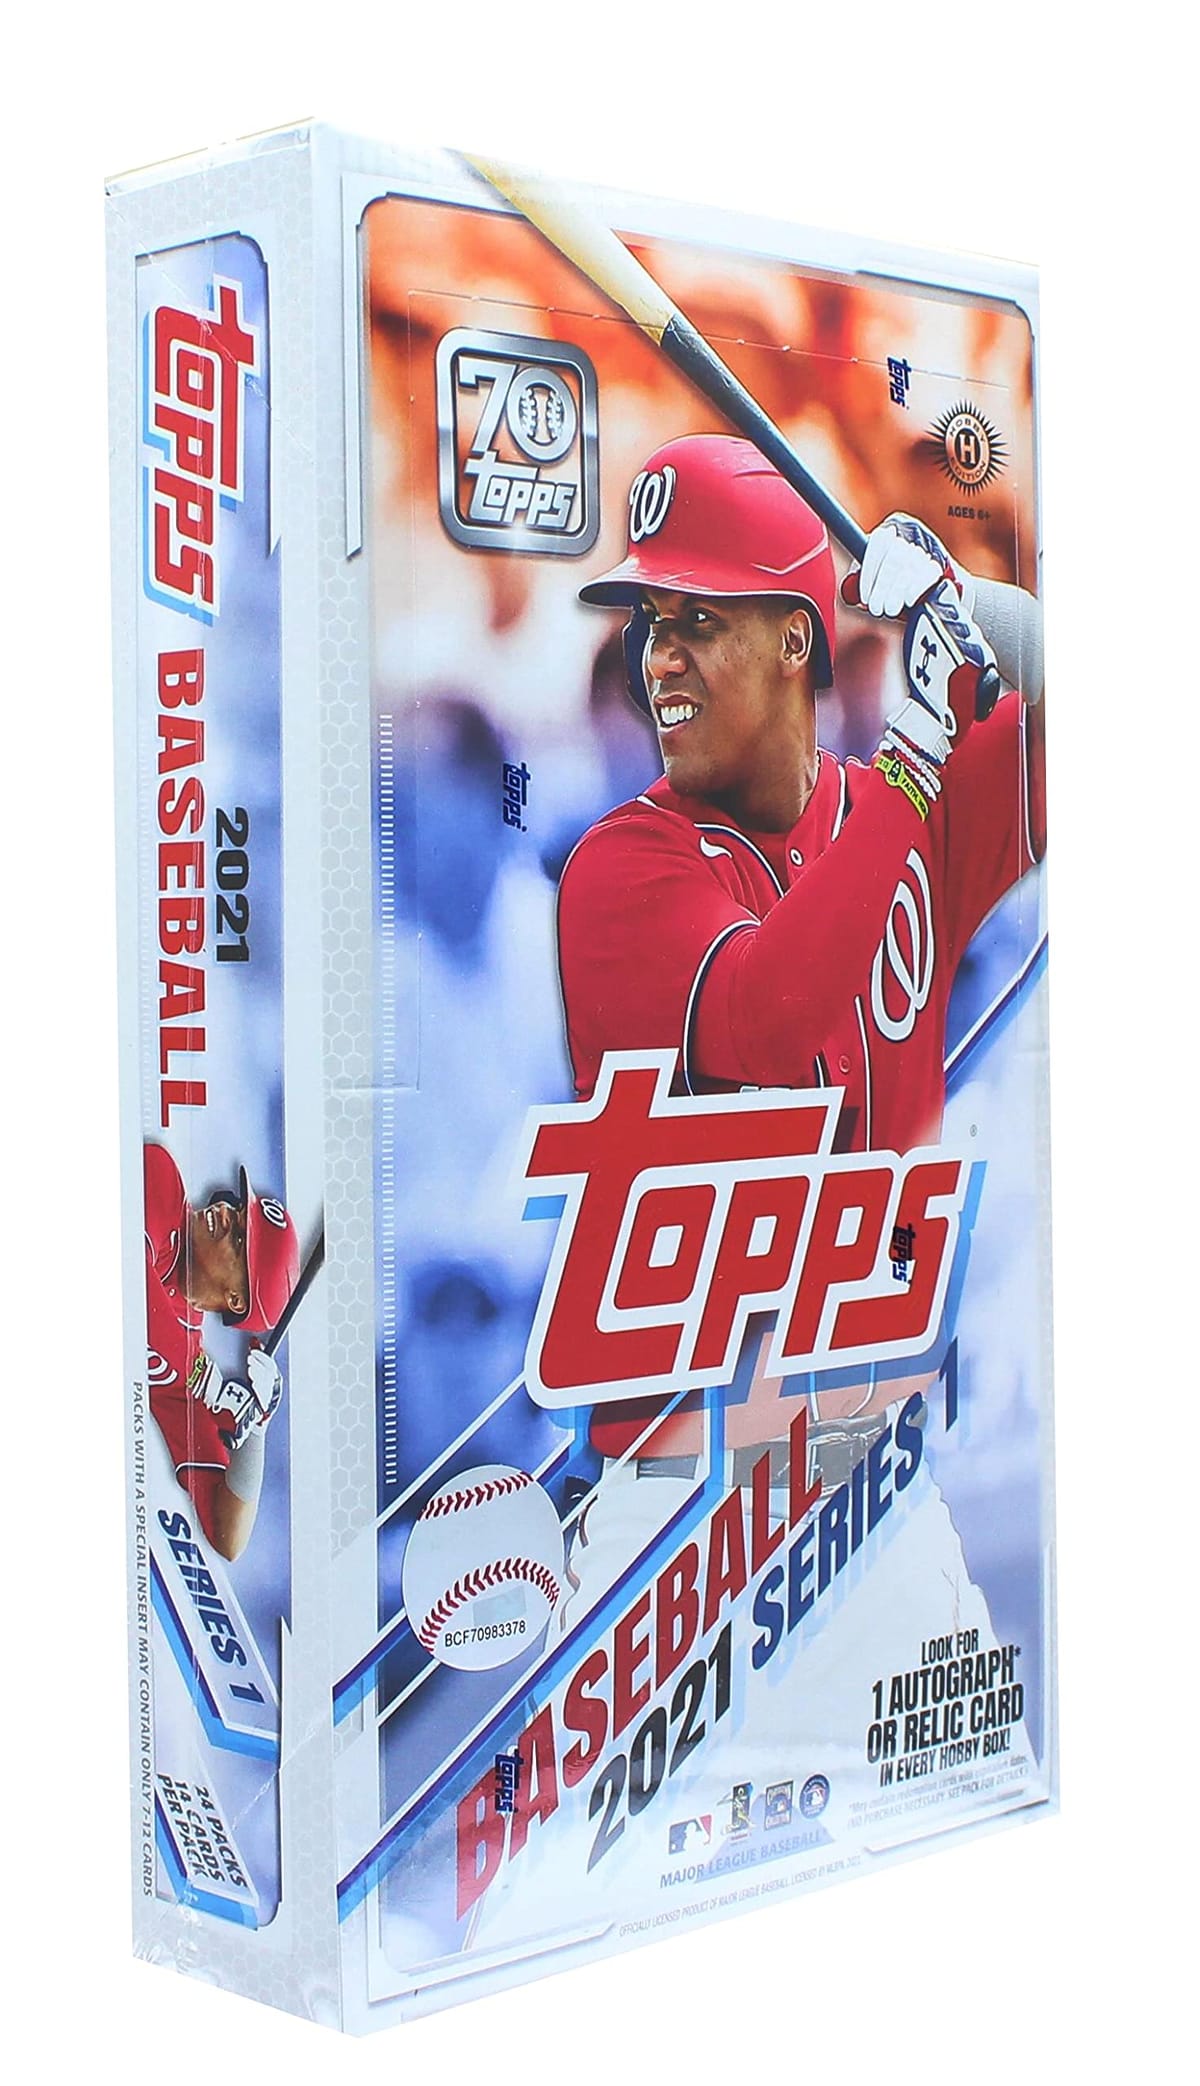 MLB 2021 Topps Series 1 Baseball Card Hobby Box gbvX V[Y1 x[X{[ zr[{bNX W[[O 싅 J[h